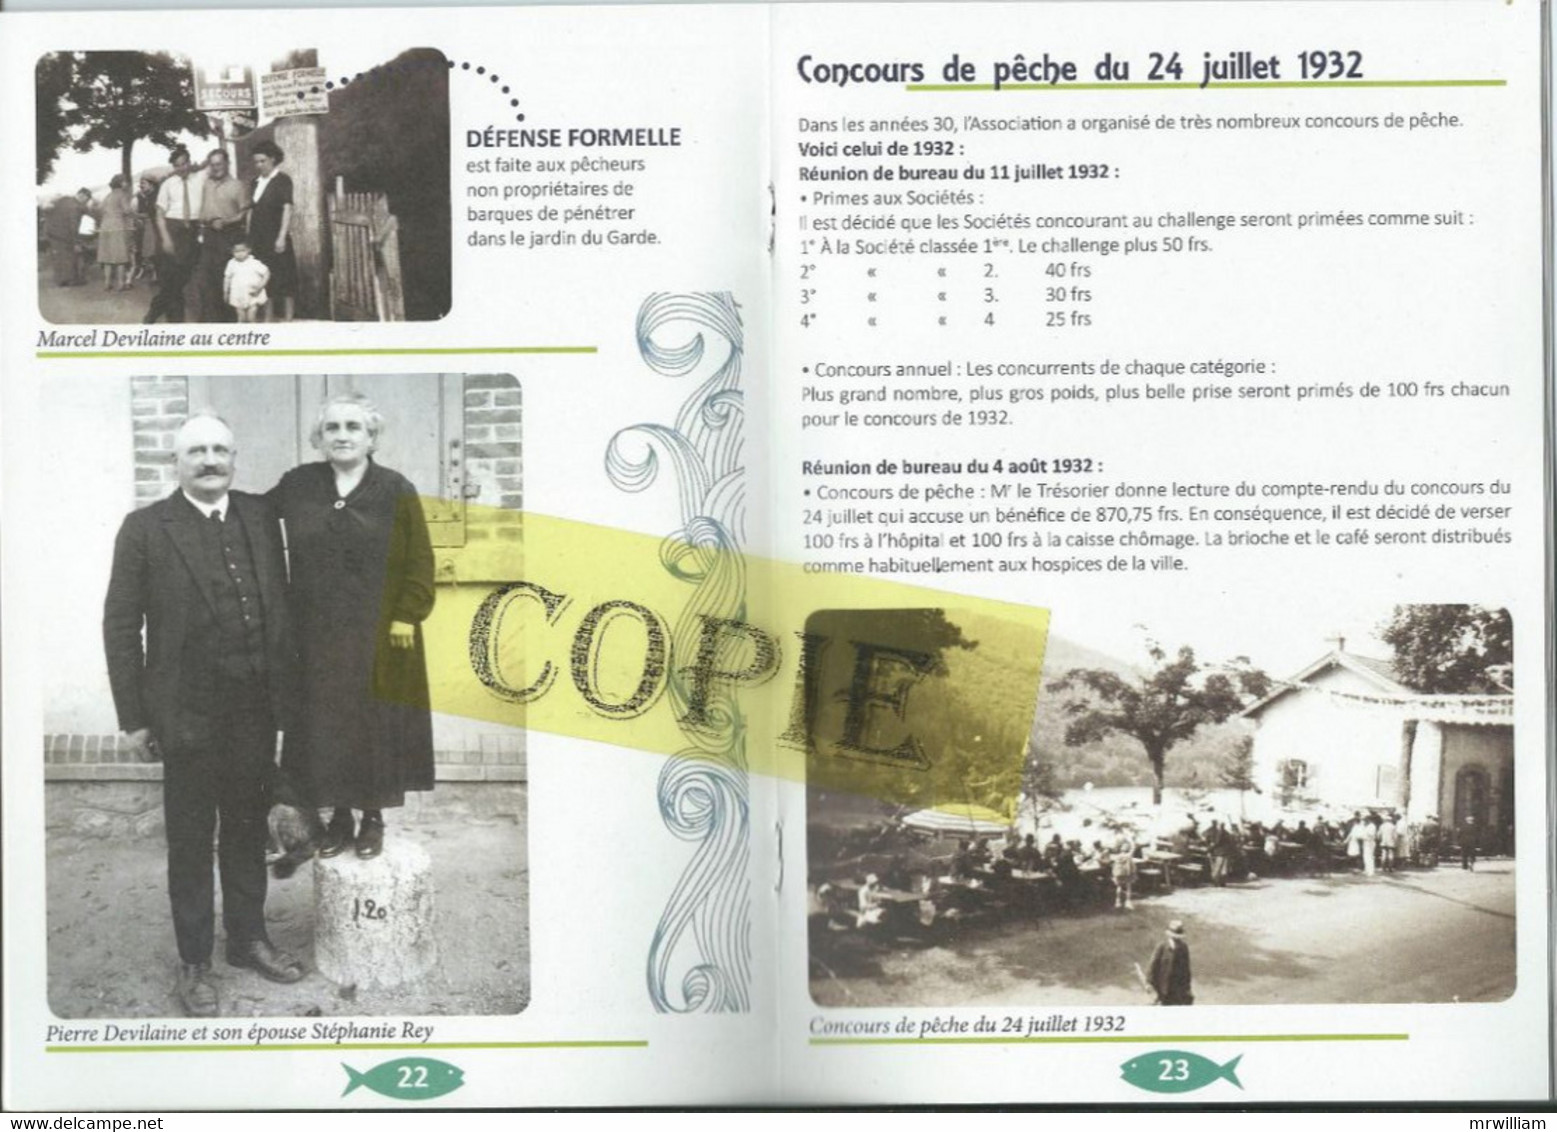 1914/2014, 100 Ans D'histoire, Société De Pêche " La Turdine ", TARARE (69) - Rhône-Alpes